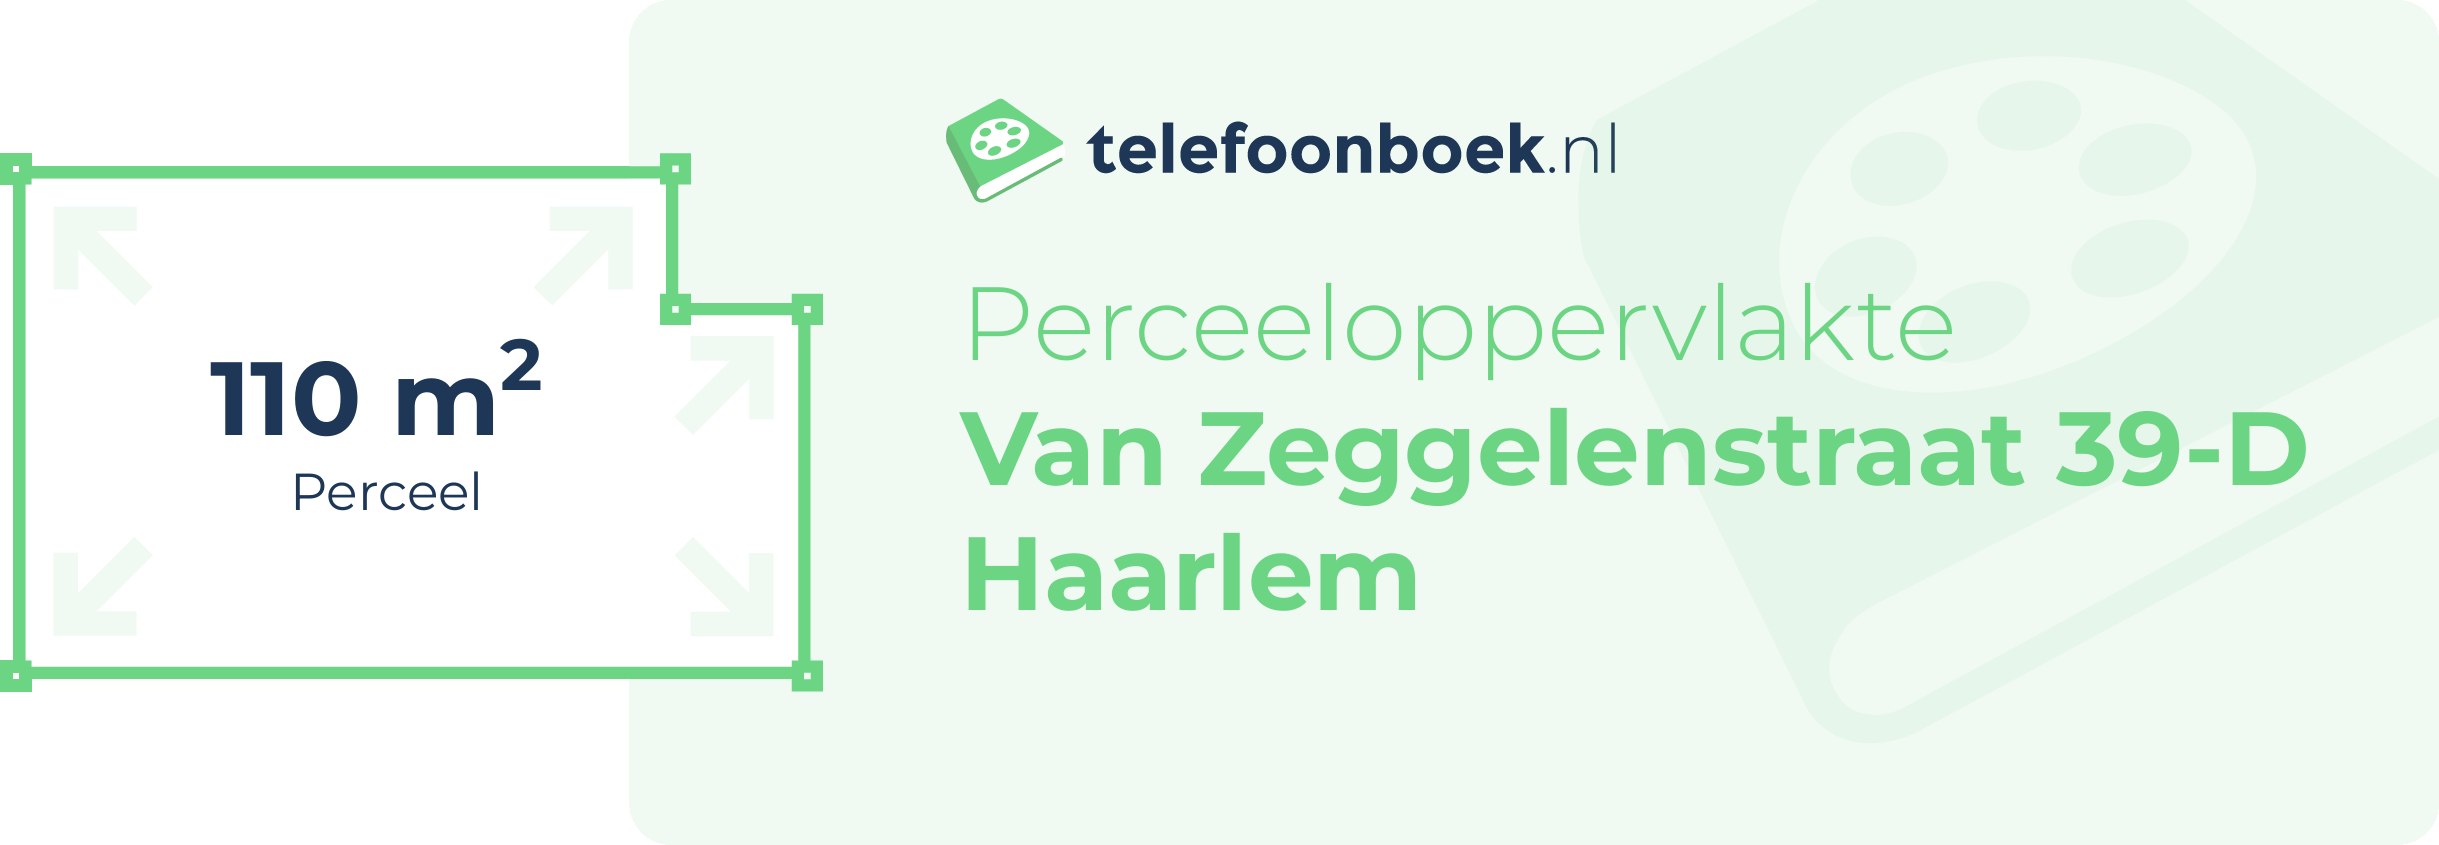 Perceeloppervlakte Van Zeggelenstraat 39-D Haarlem